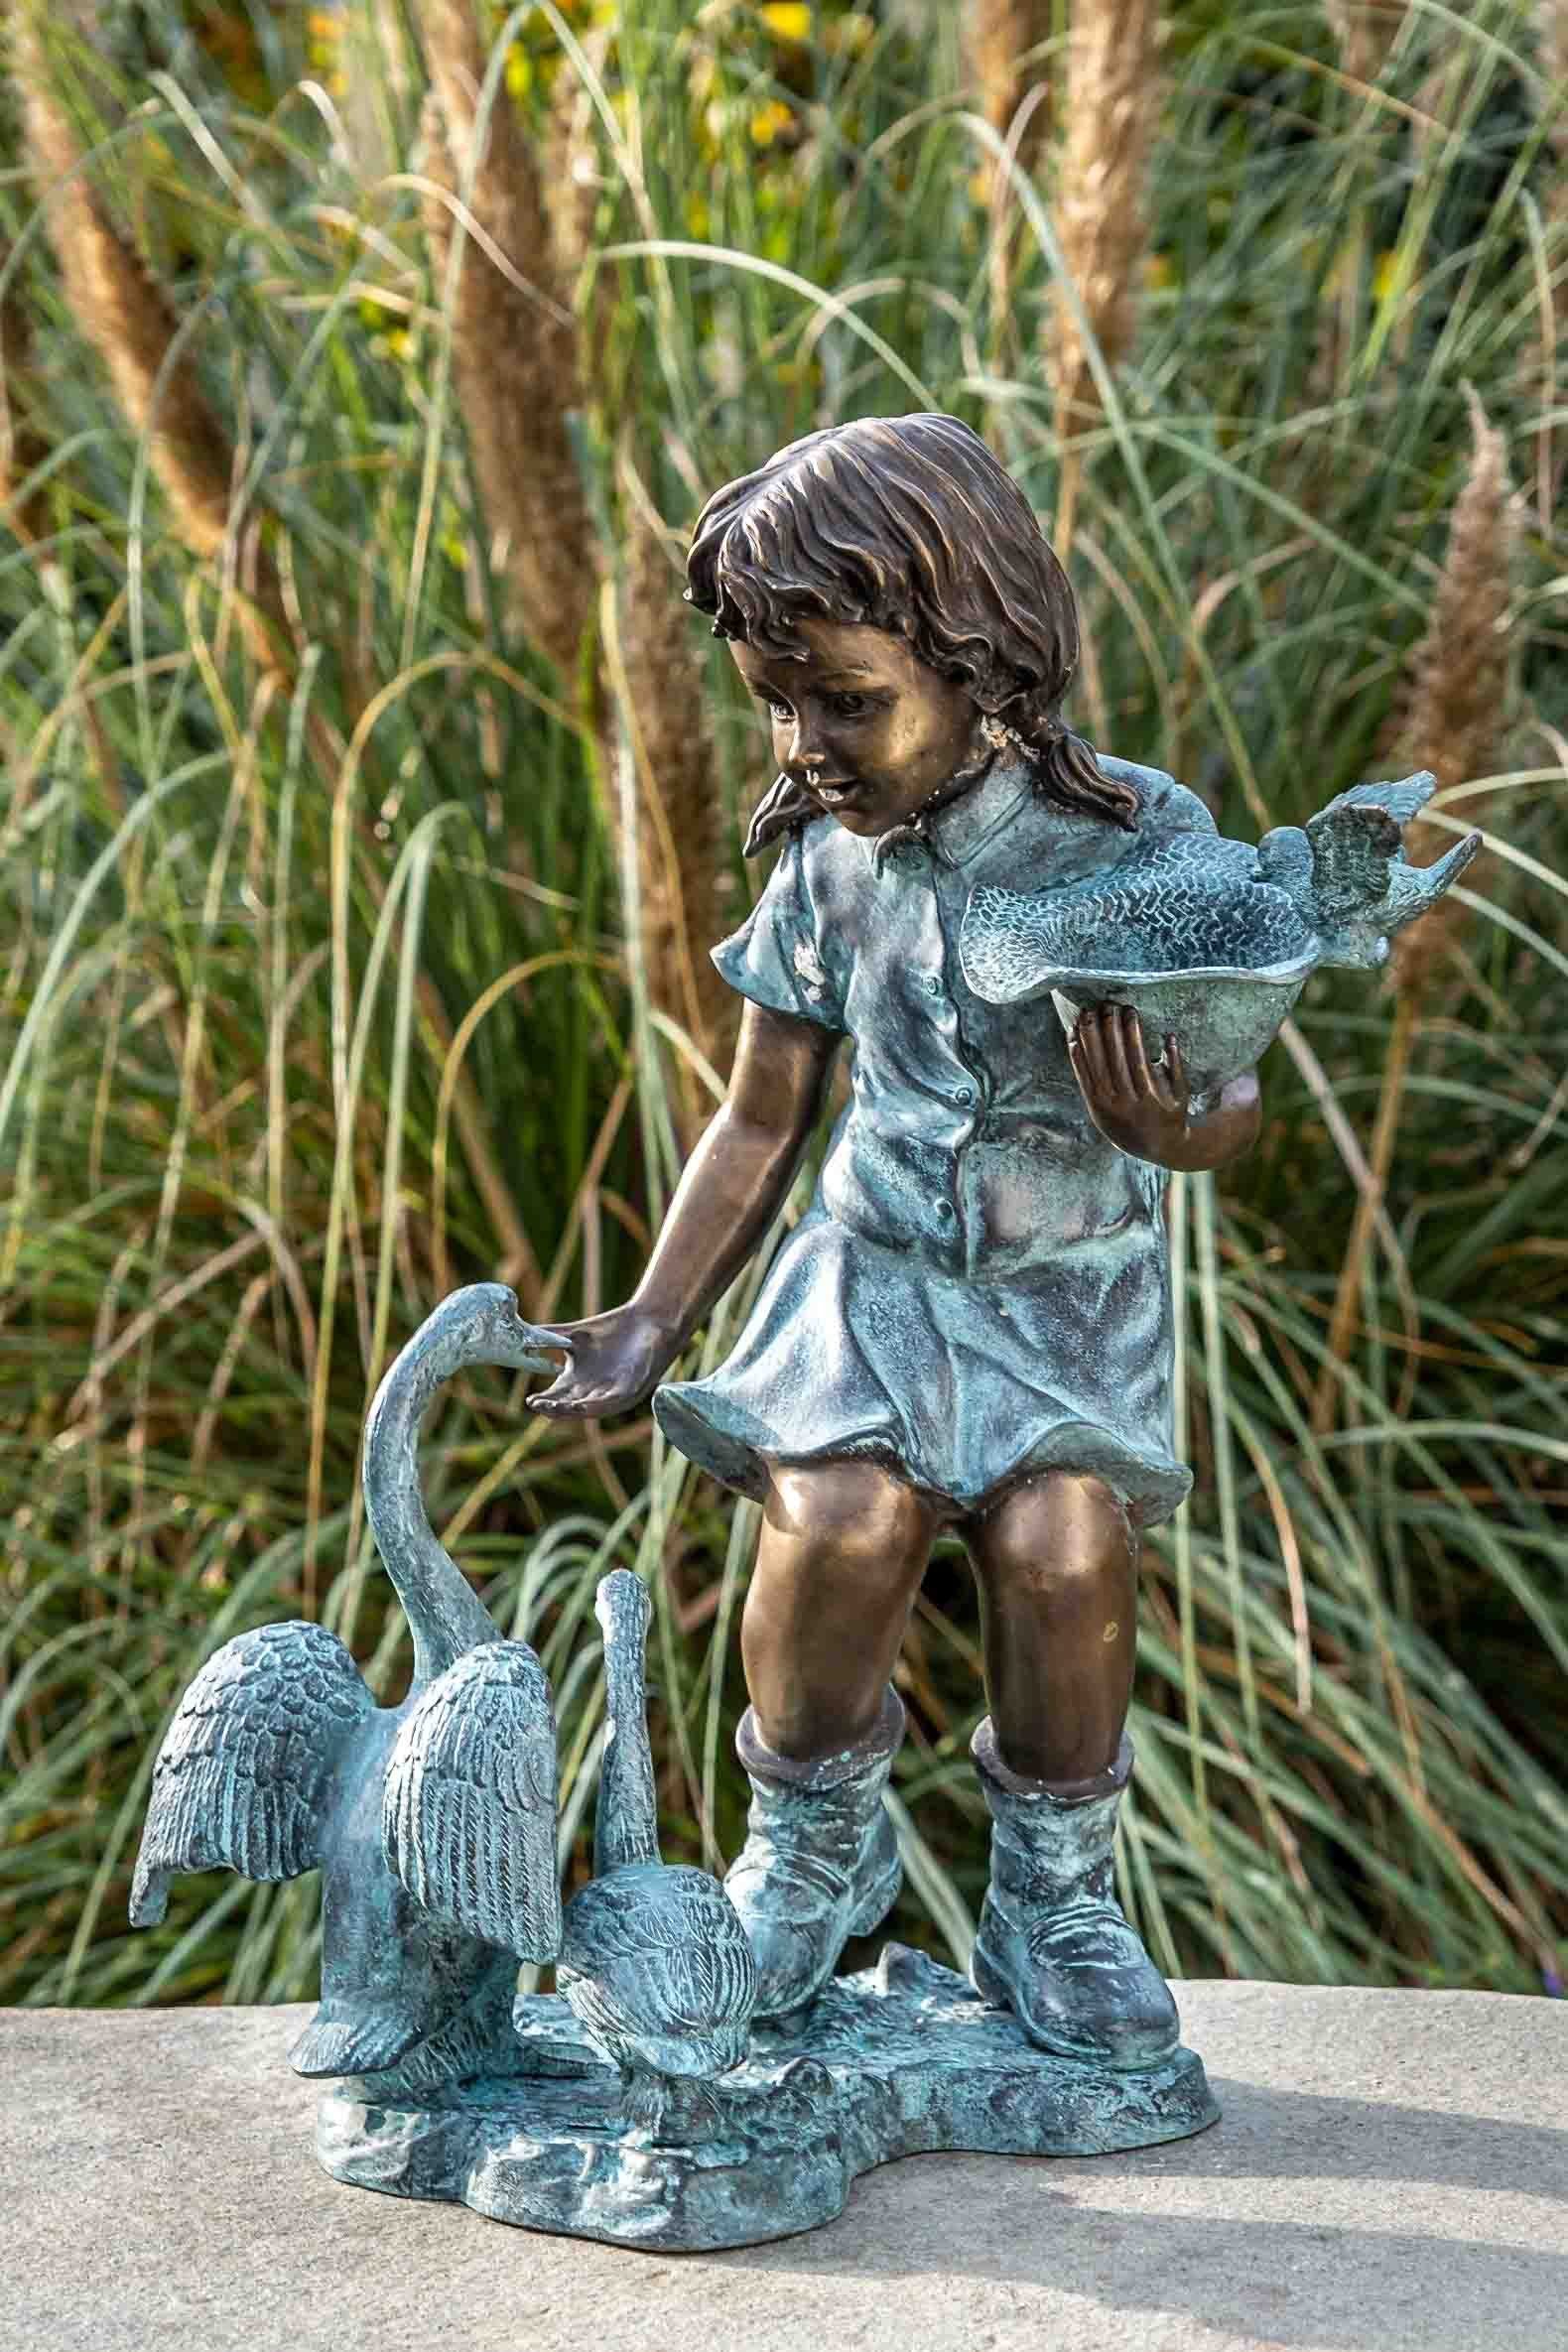 IDYL Gartenfigur IDYL Bronze-Skulptur Mädchen mit einer Gans, Bronze – sehr robust – Langlebig – witterungsbeständig gegen Frost, Regen und UV-Strahlung. Die Modelle werden in Wachsausschmelzverfahren in Bronze gegossen und von Hand patiniert.